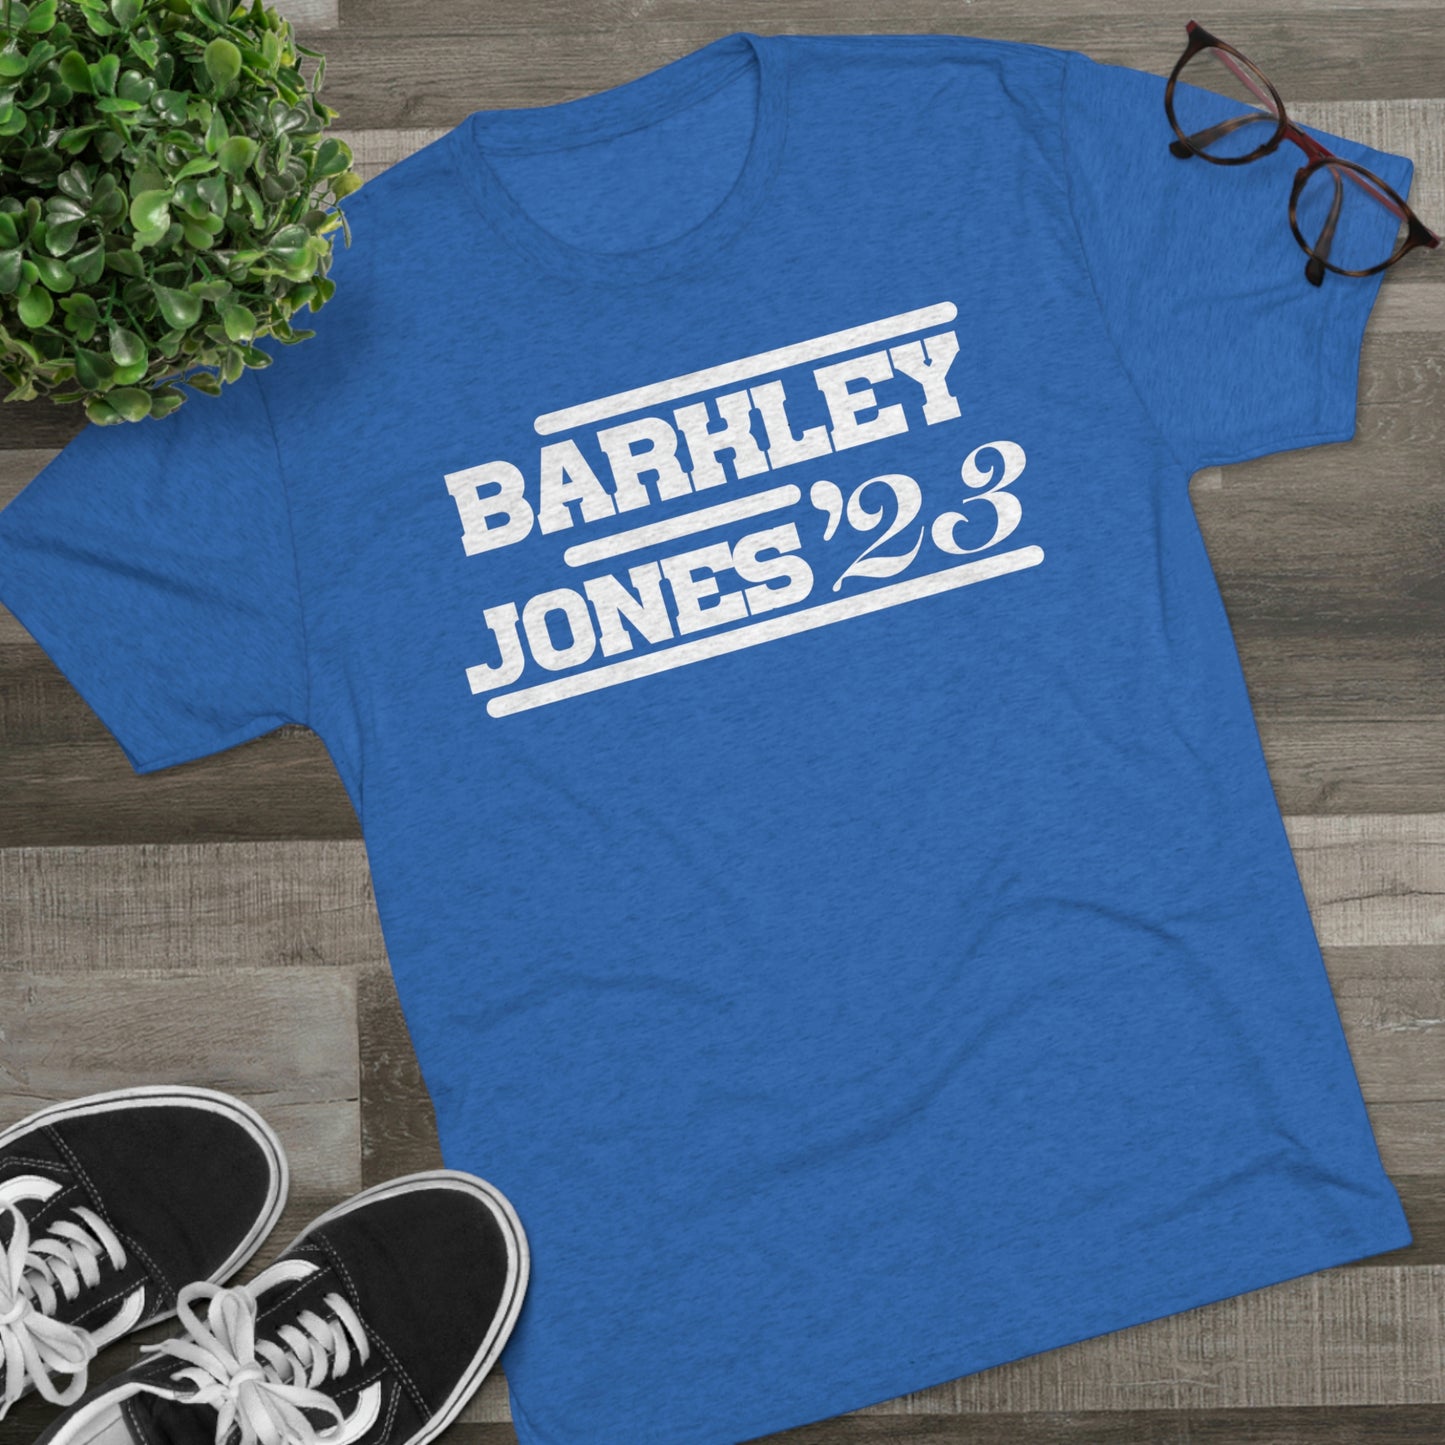 Giants Barkley Jones '23 Shirt - IsGoodBrand